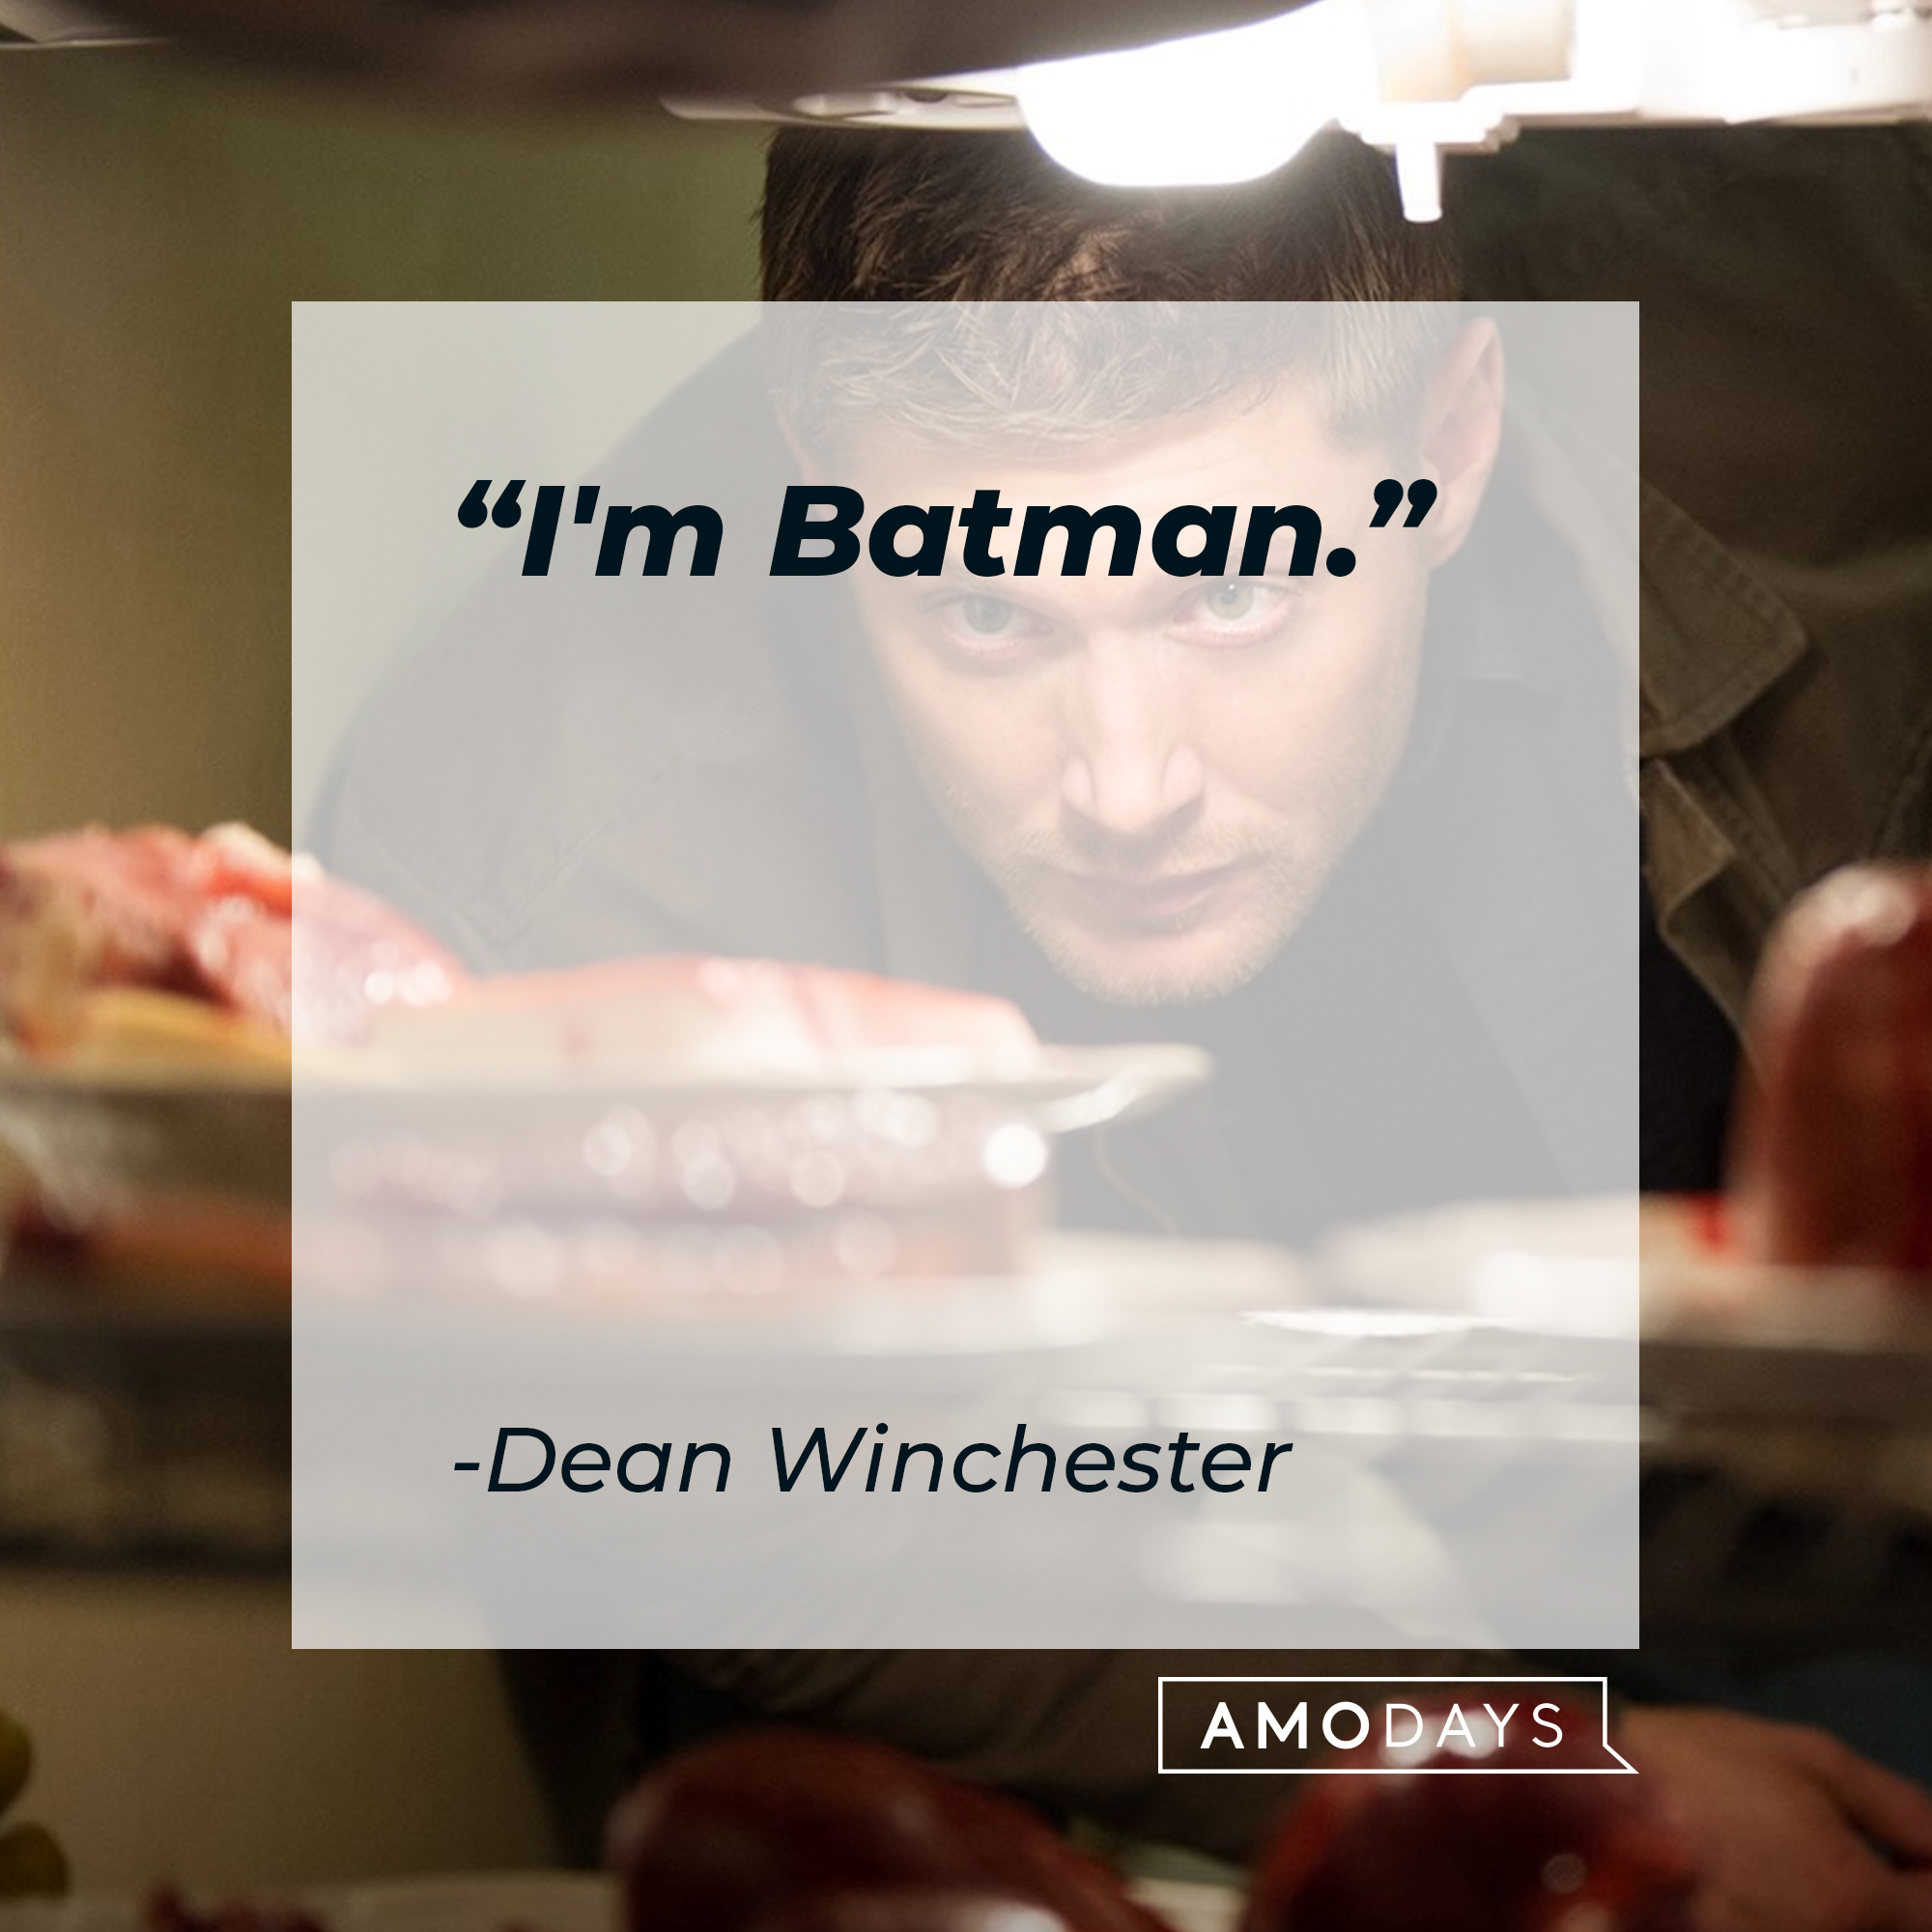 Dean Winchester's quote: “I'm Batman.” | Source: facebook.com/Supernatural